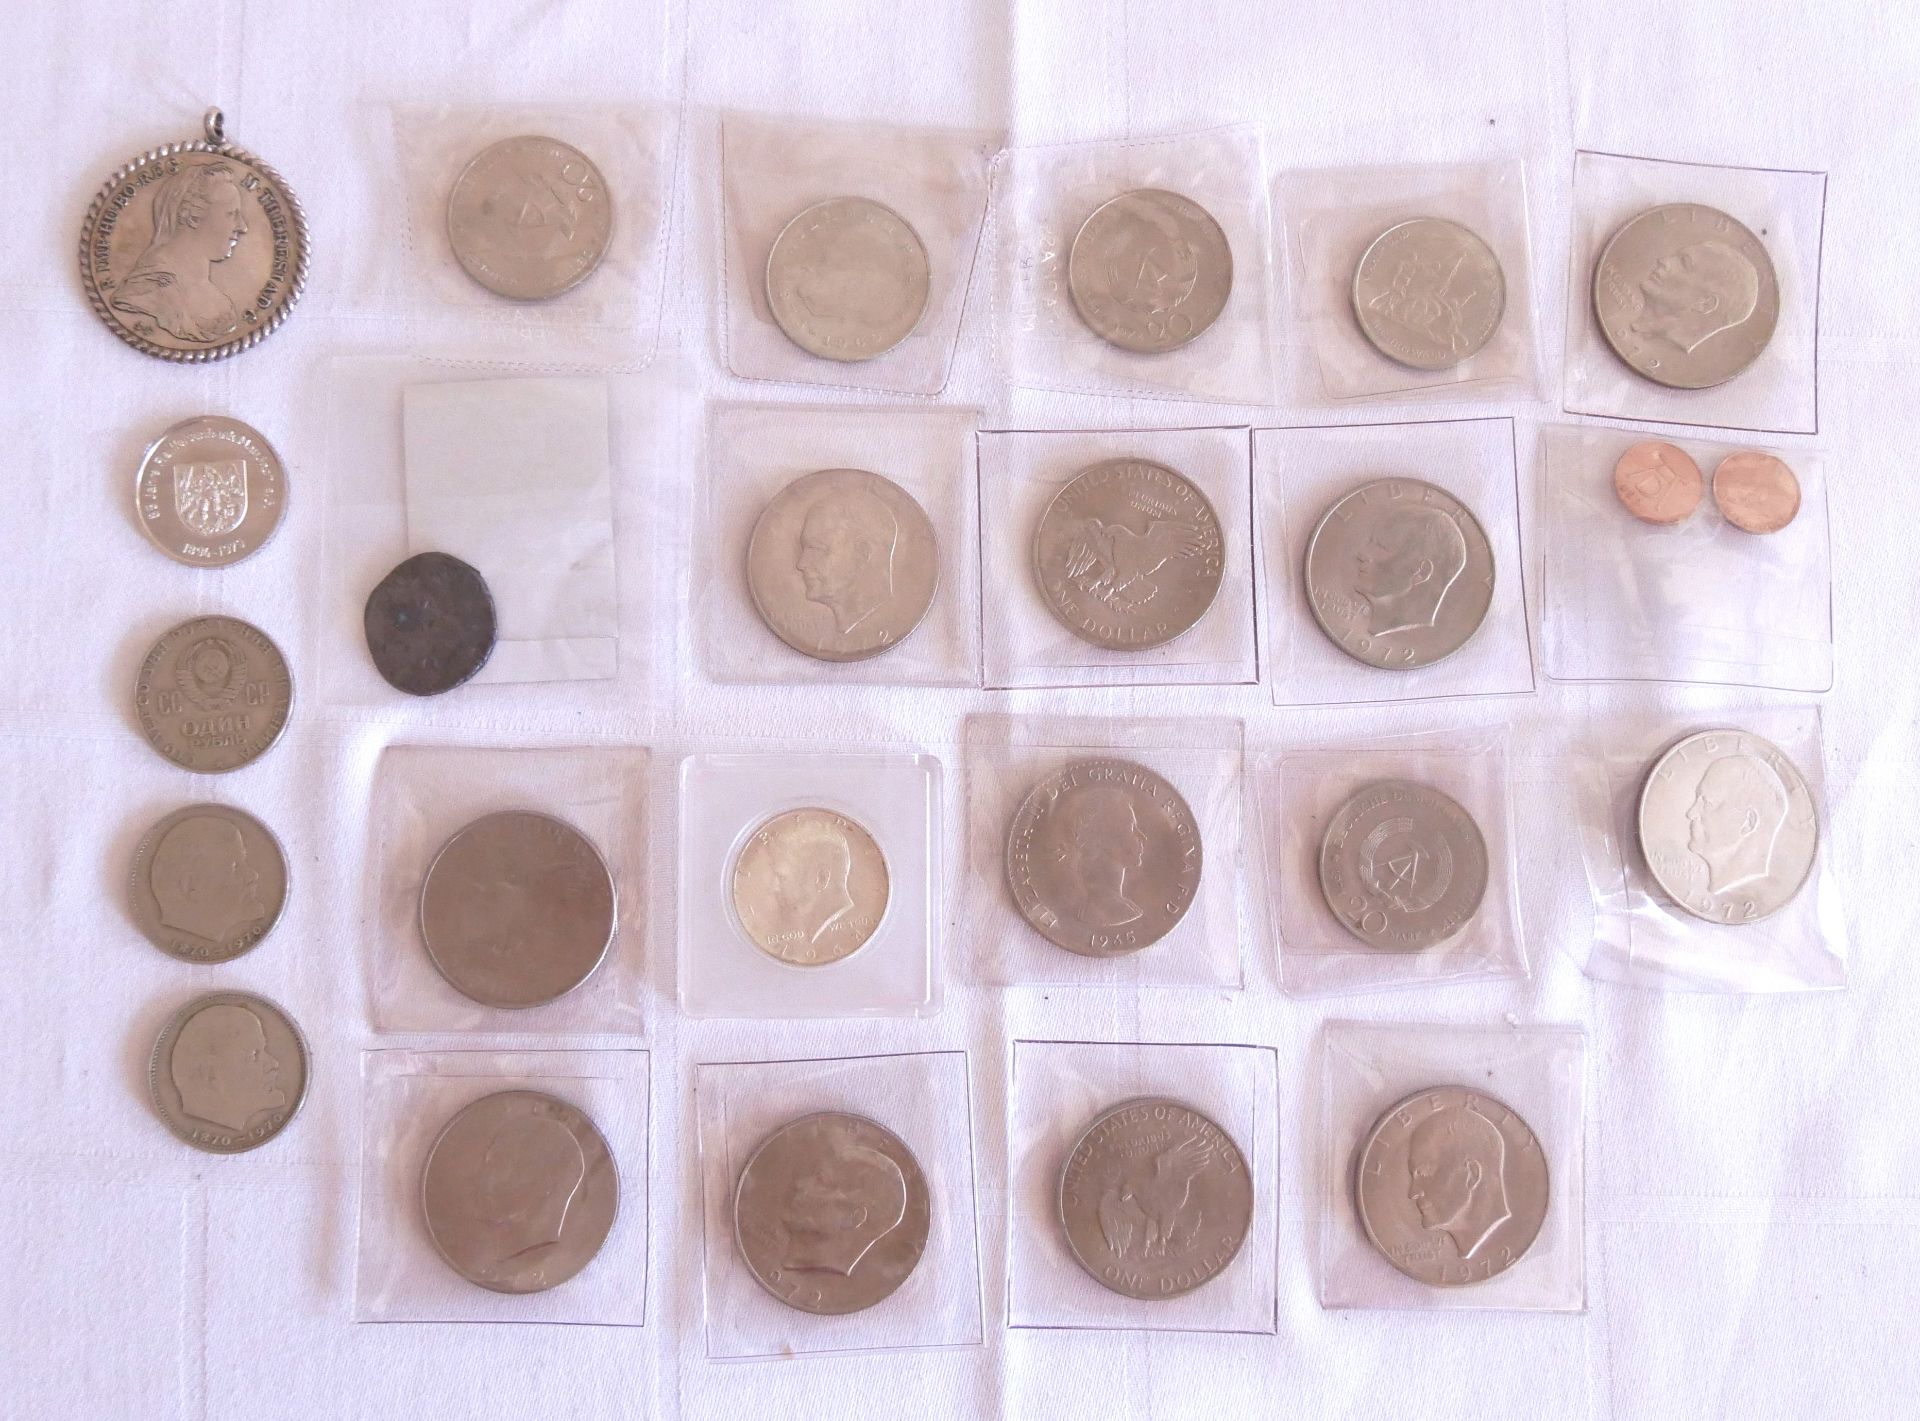 Lot Münzen und Medaillen, dabei 10x1 Dollar Eisenhower, Münzen + DDR Münzen, sowie etwas Silber.